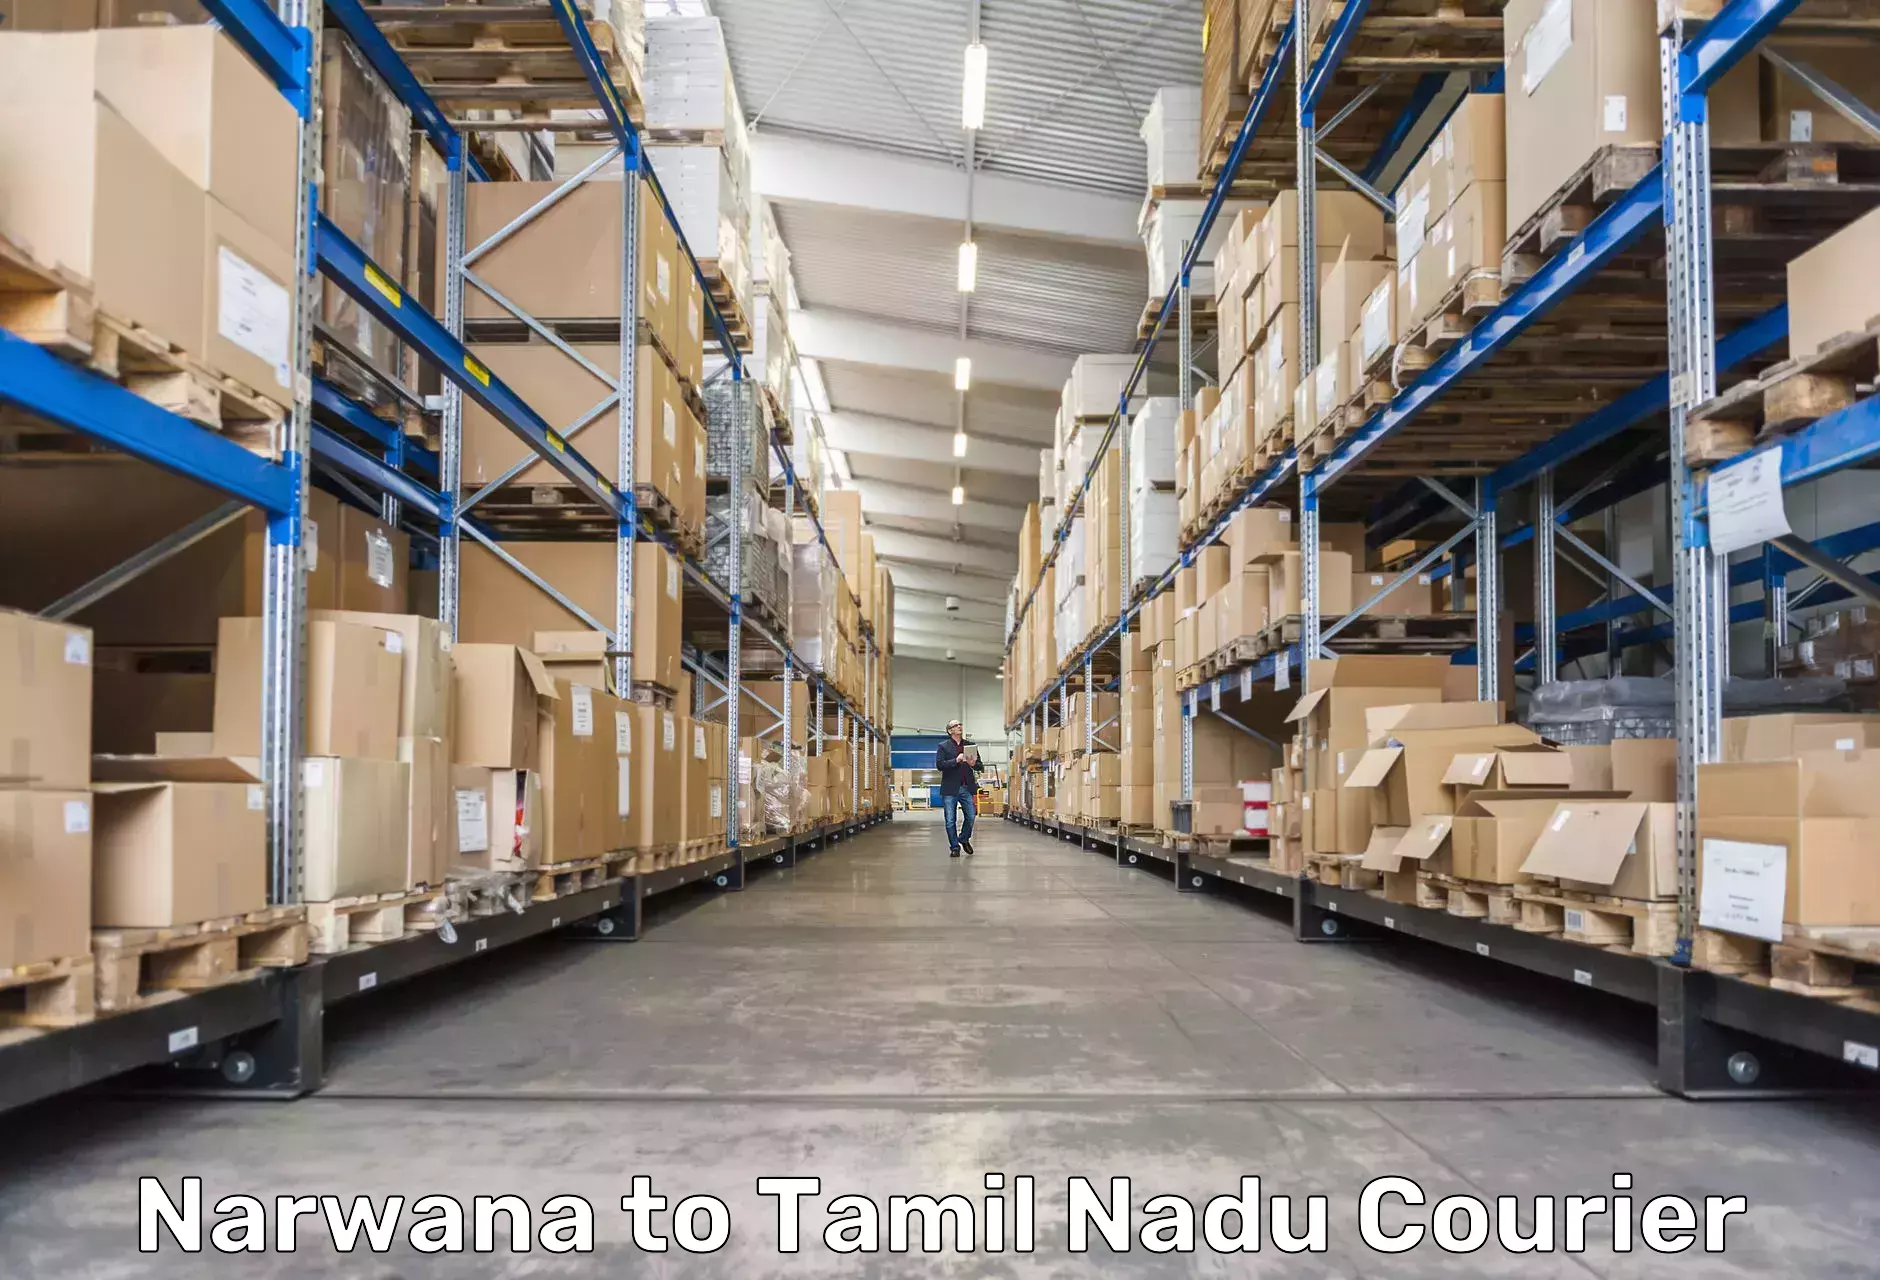 High-speed parcel service Narwana to Udagamandalam